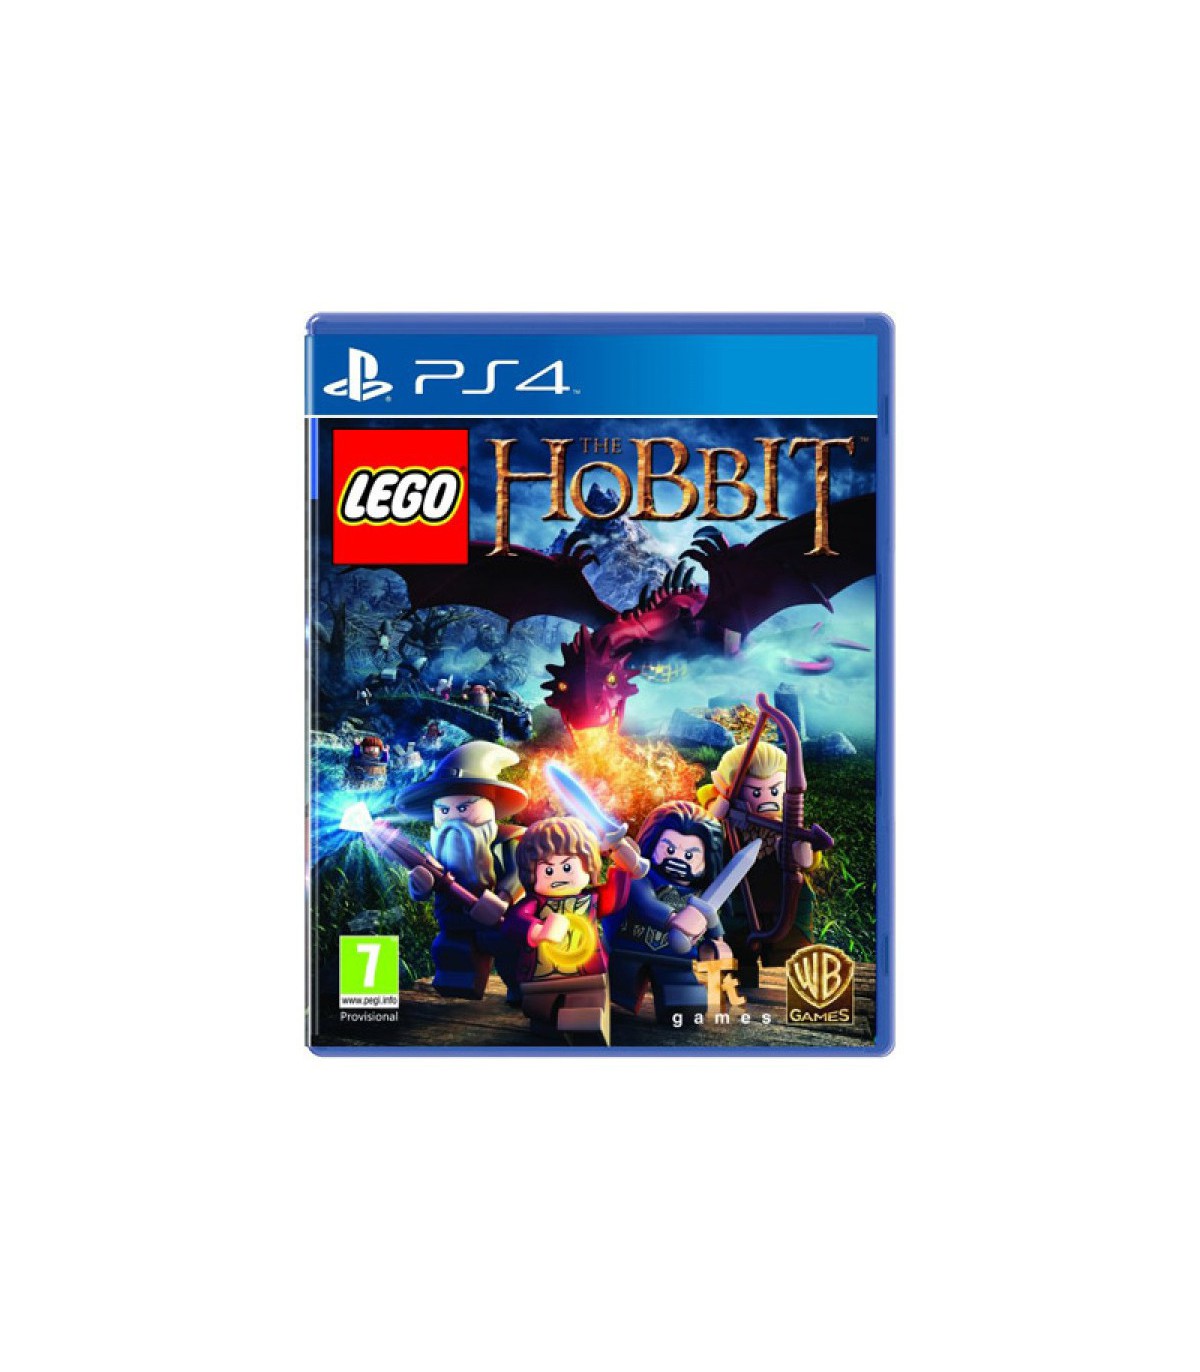 بازی LEGO The Hobbit کارکرده - پلی استیشن 4